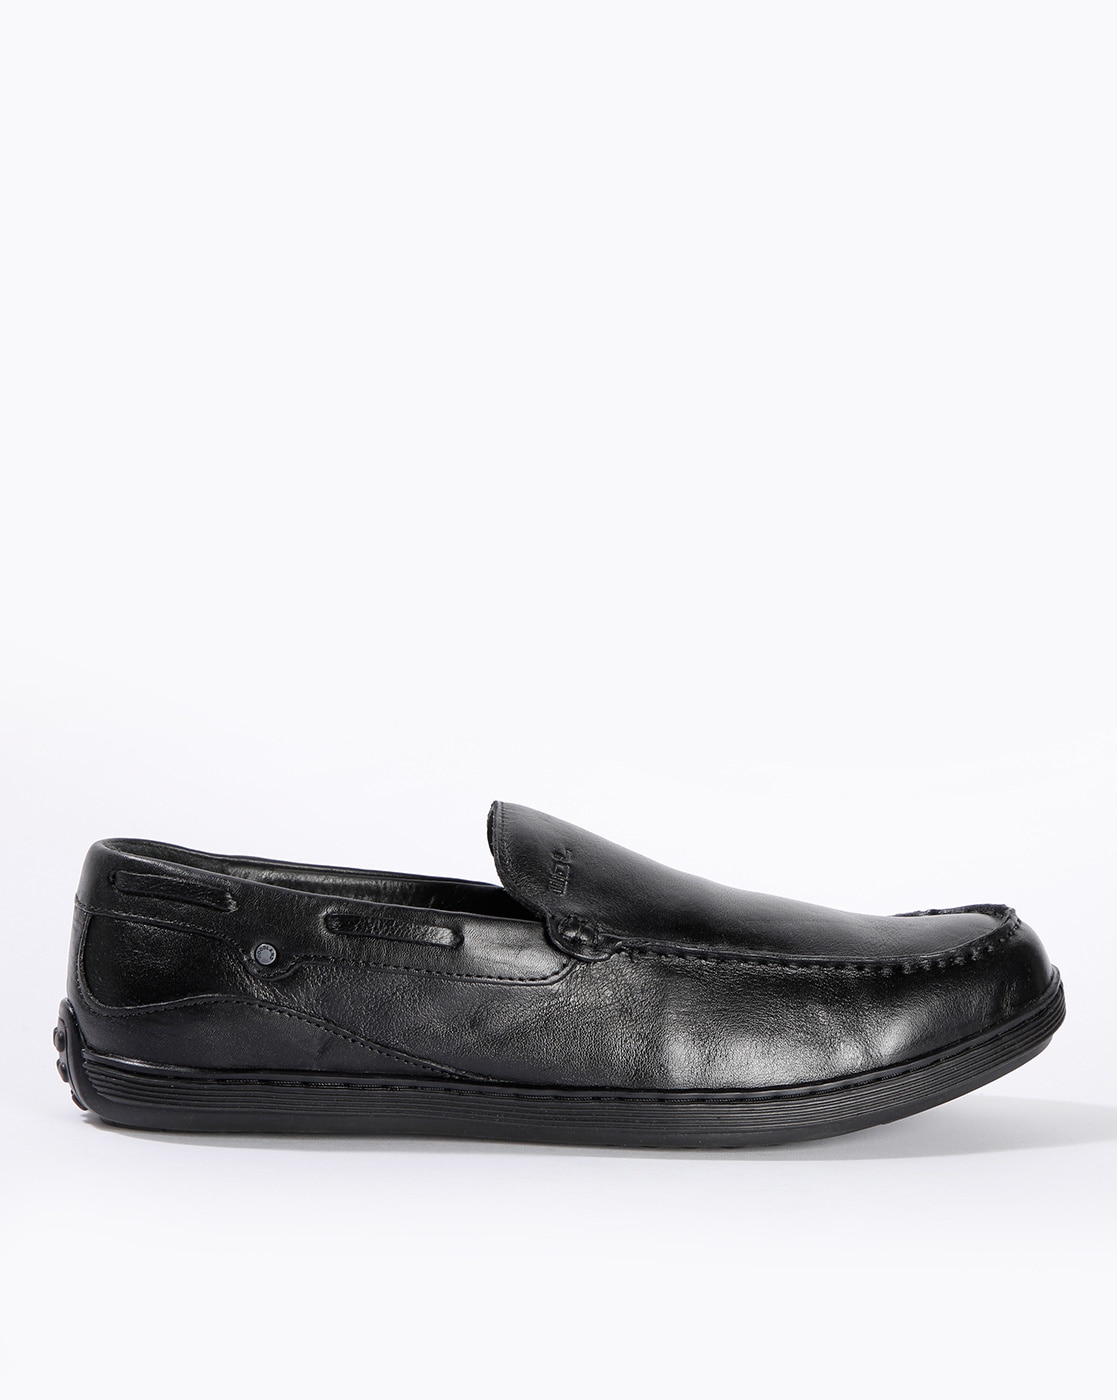 black formal shoes woodland